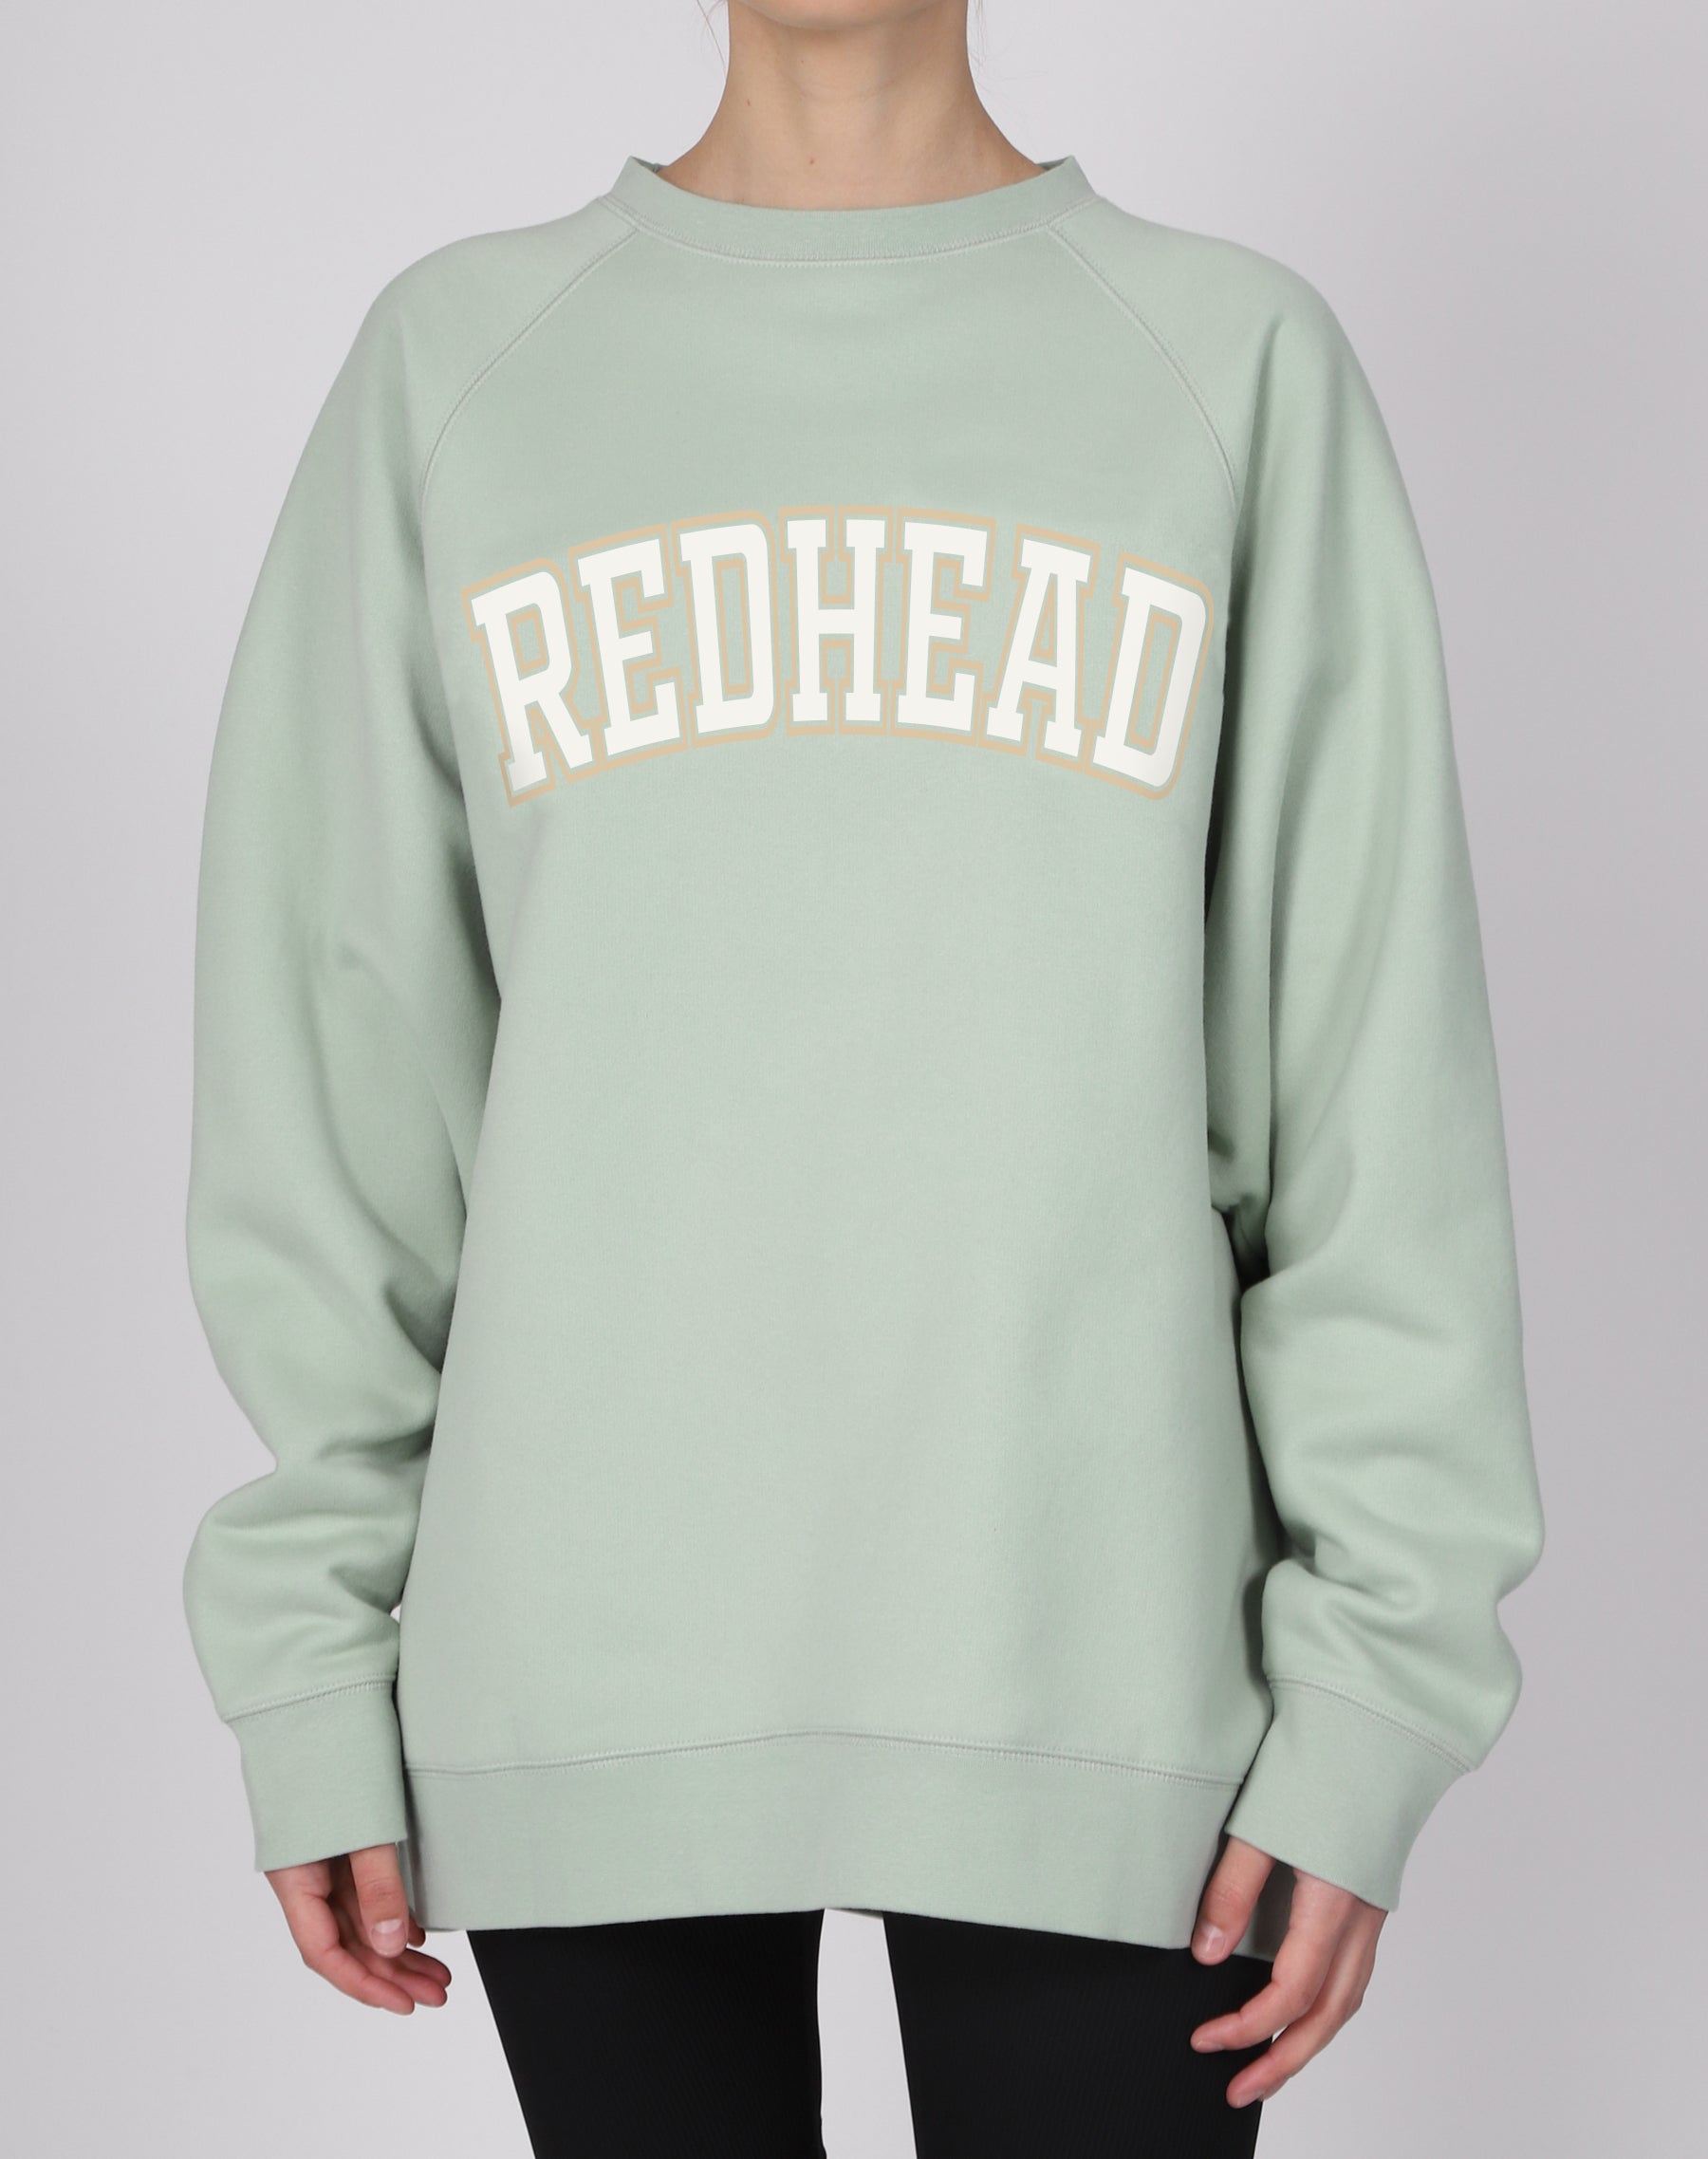 The "REDHEAD" Not Your Boyfriend's Crew Neck Sweatshirt | Sage